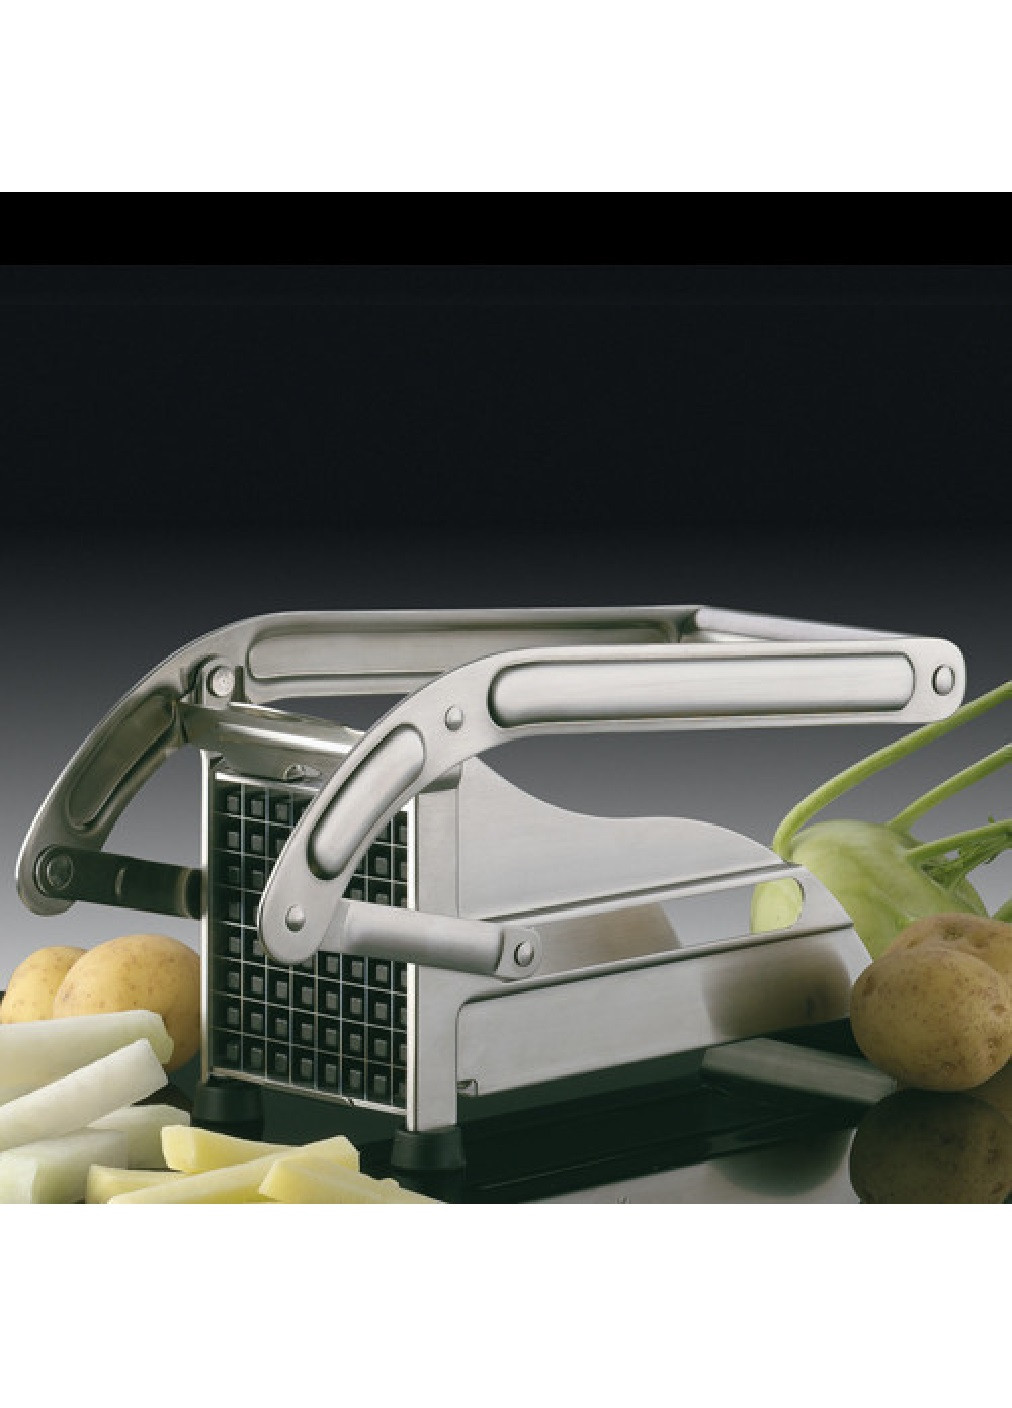 Картофелерезка овощерезка механическая устройство для резки картофеля фри 26х12,5х9,5 см (474818-Prob) Unbranded (259906171)